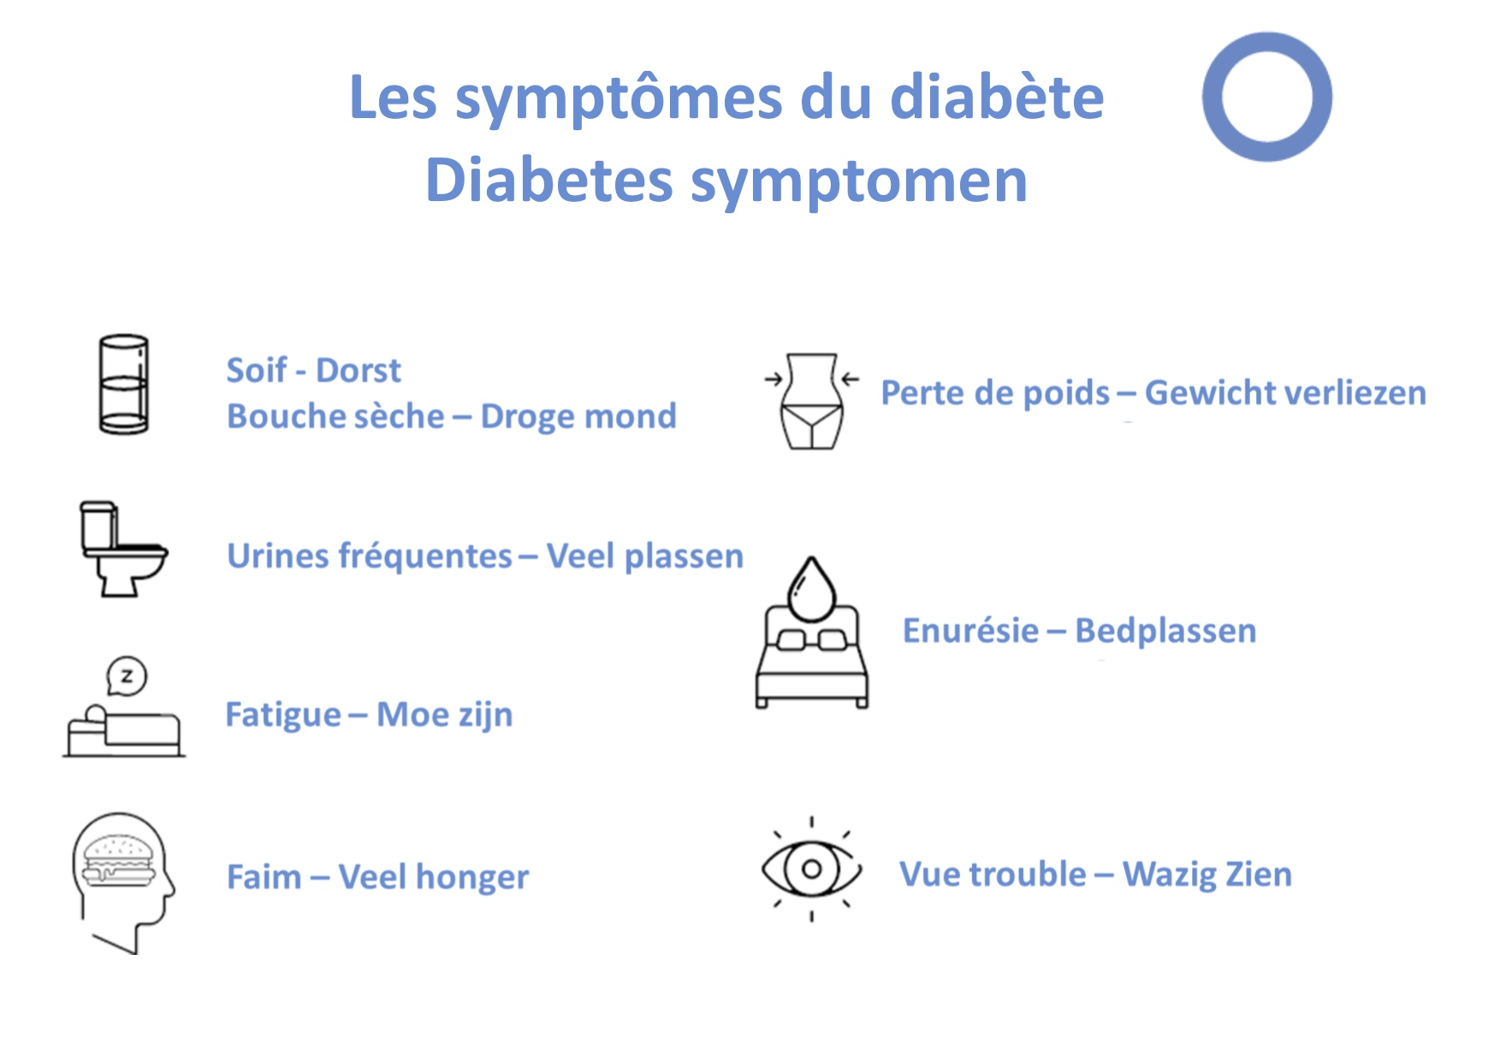 Les symptômes du diabète 
Source: ABD